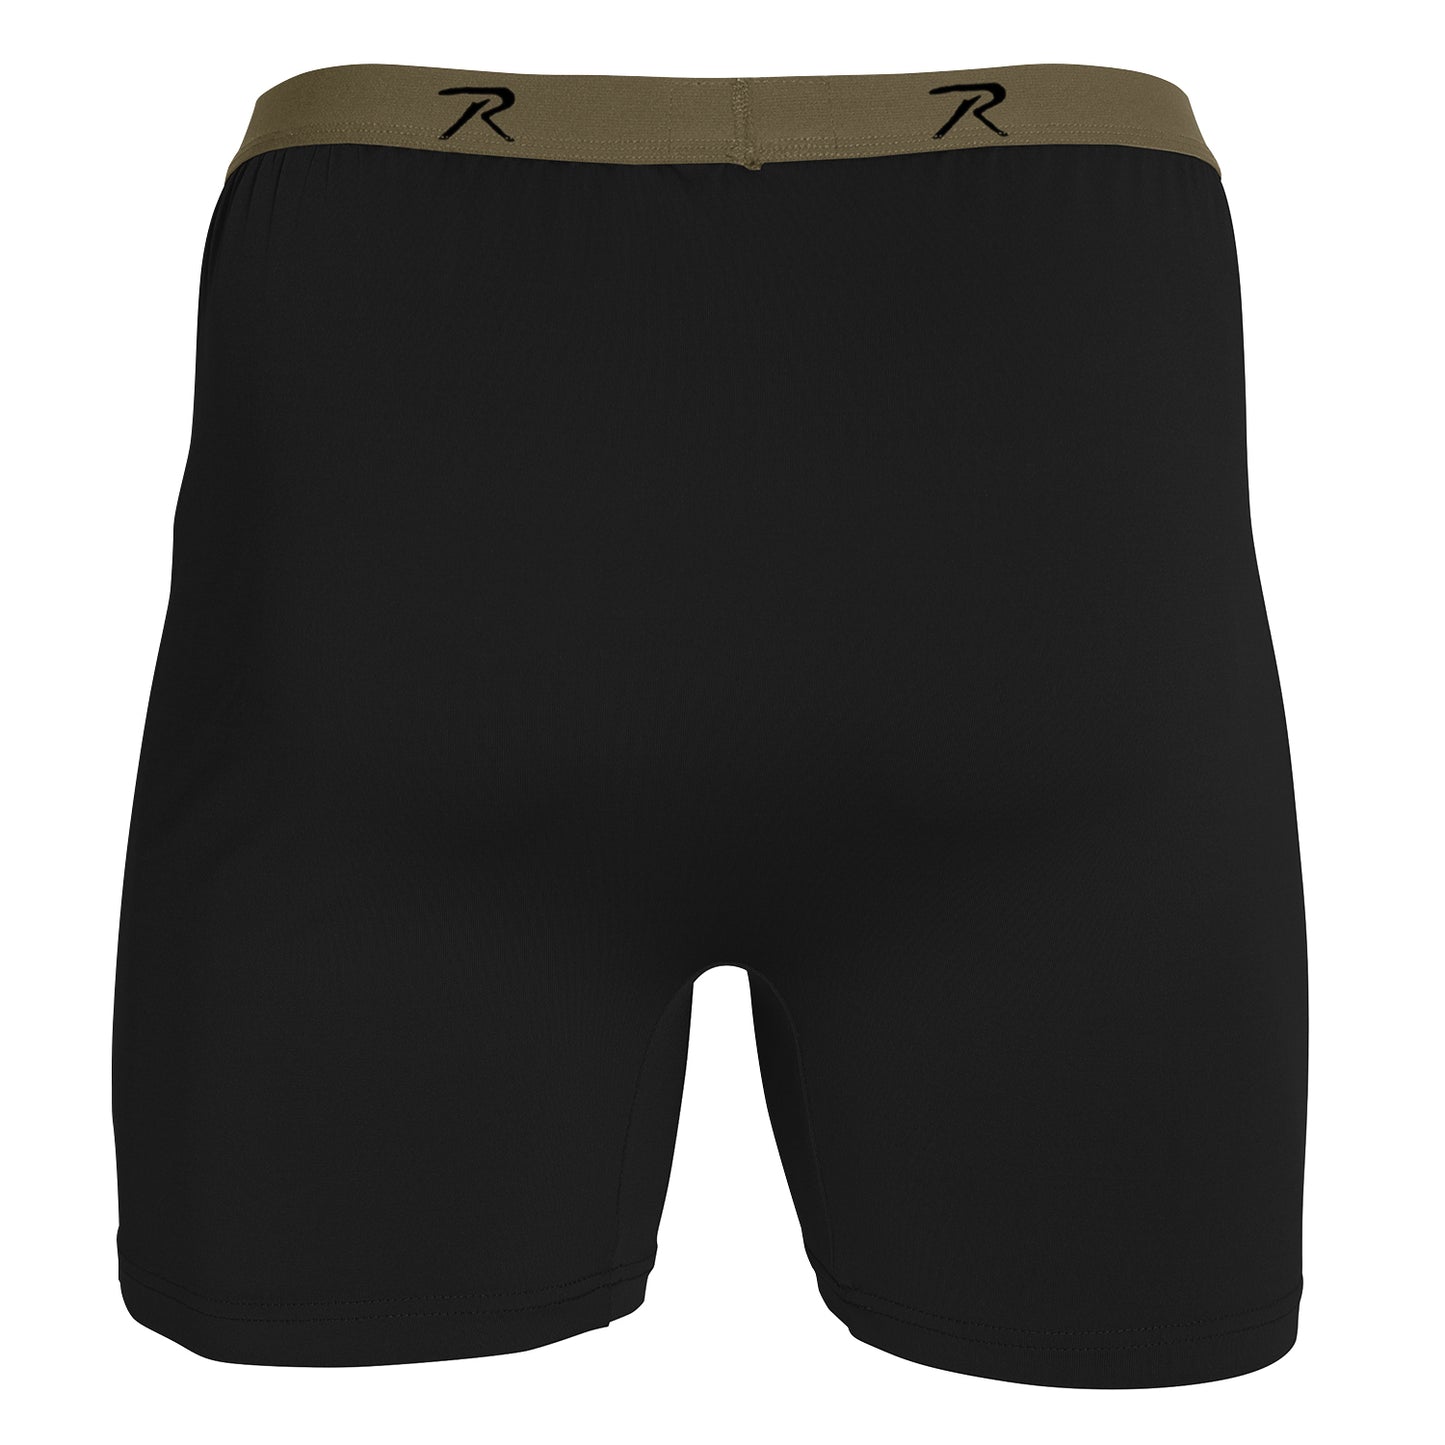 Men's Performance Underwear - Moisture Wicking Boxer Briefs